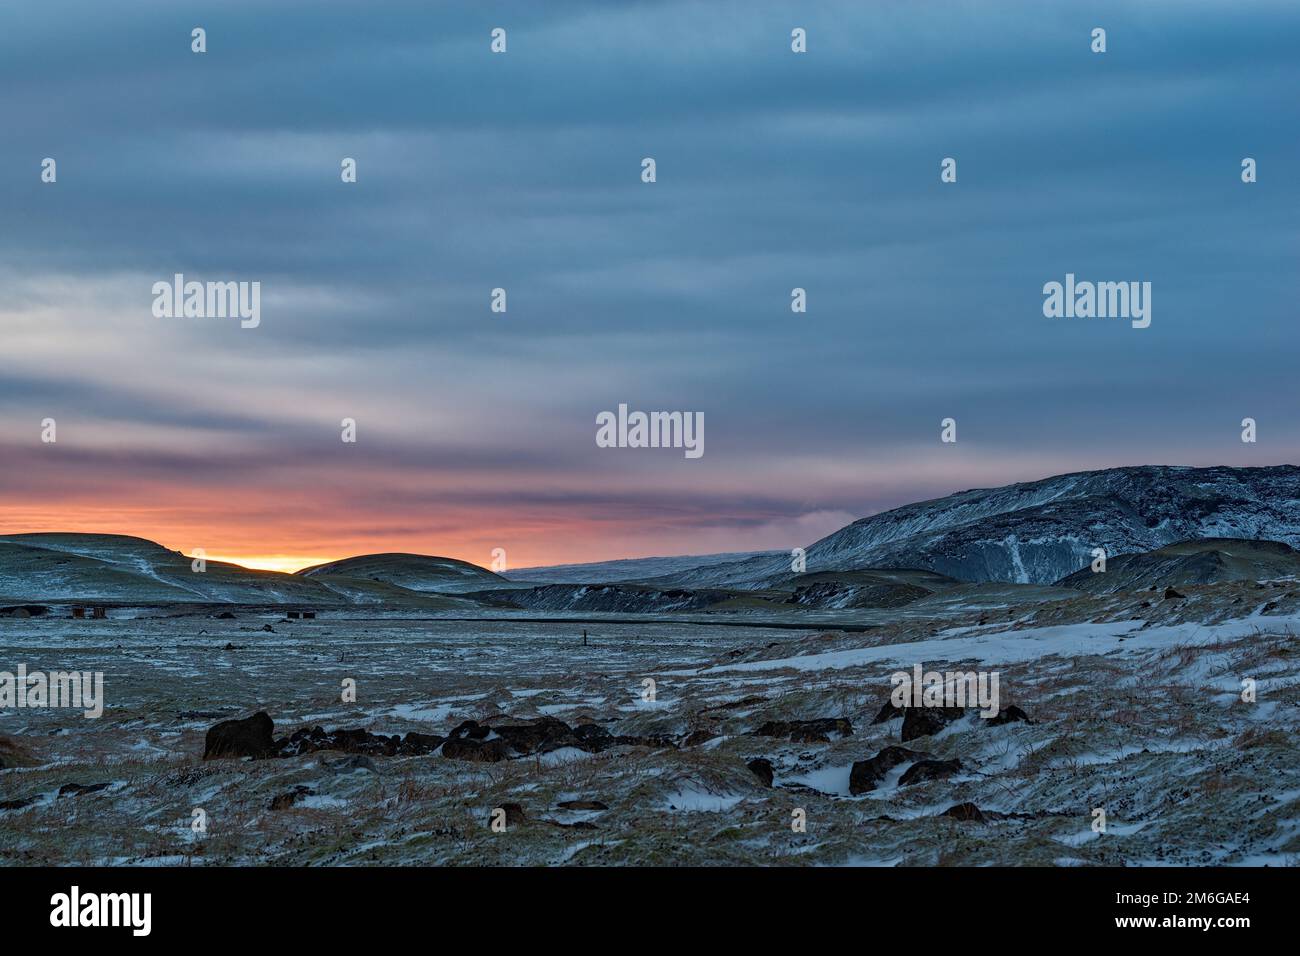 Sunset near Hveragerdi, Iceland Stock Photo